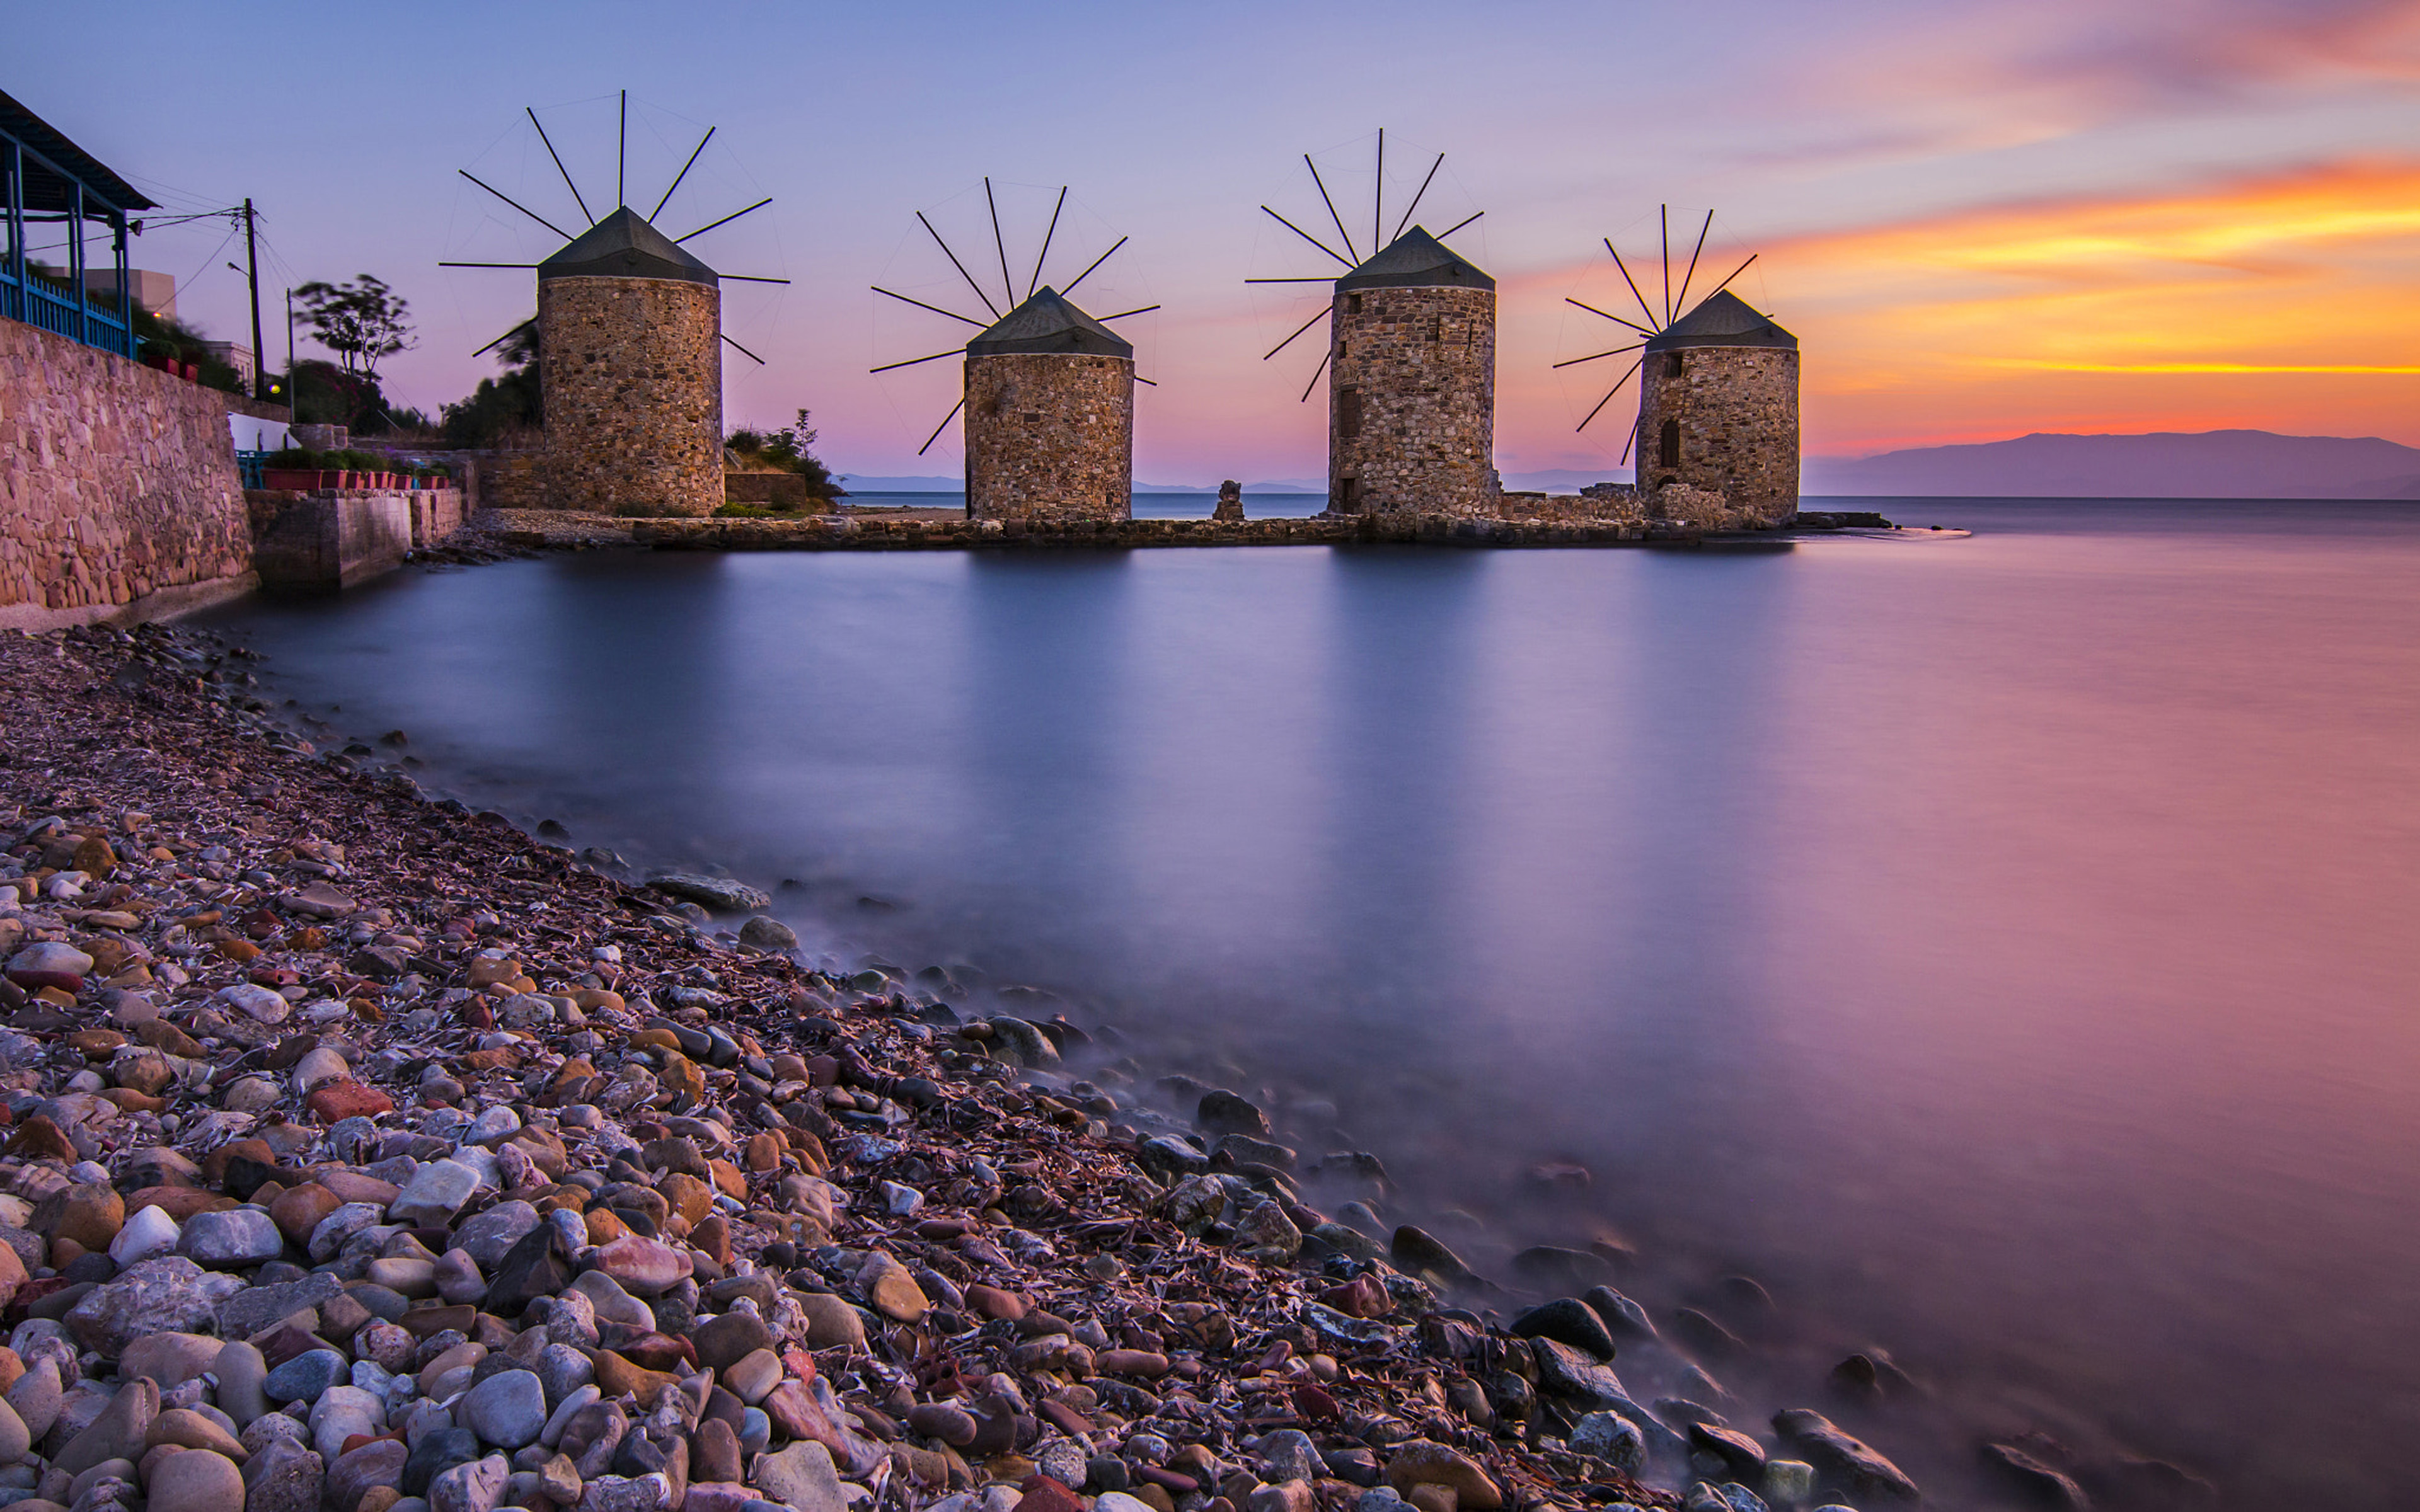 Windmills In Chios Aegean Sea Greece 4k Ultra Hd Desktop Wallpapers For ...